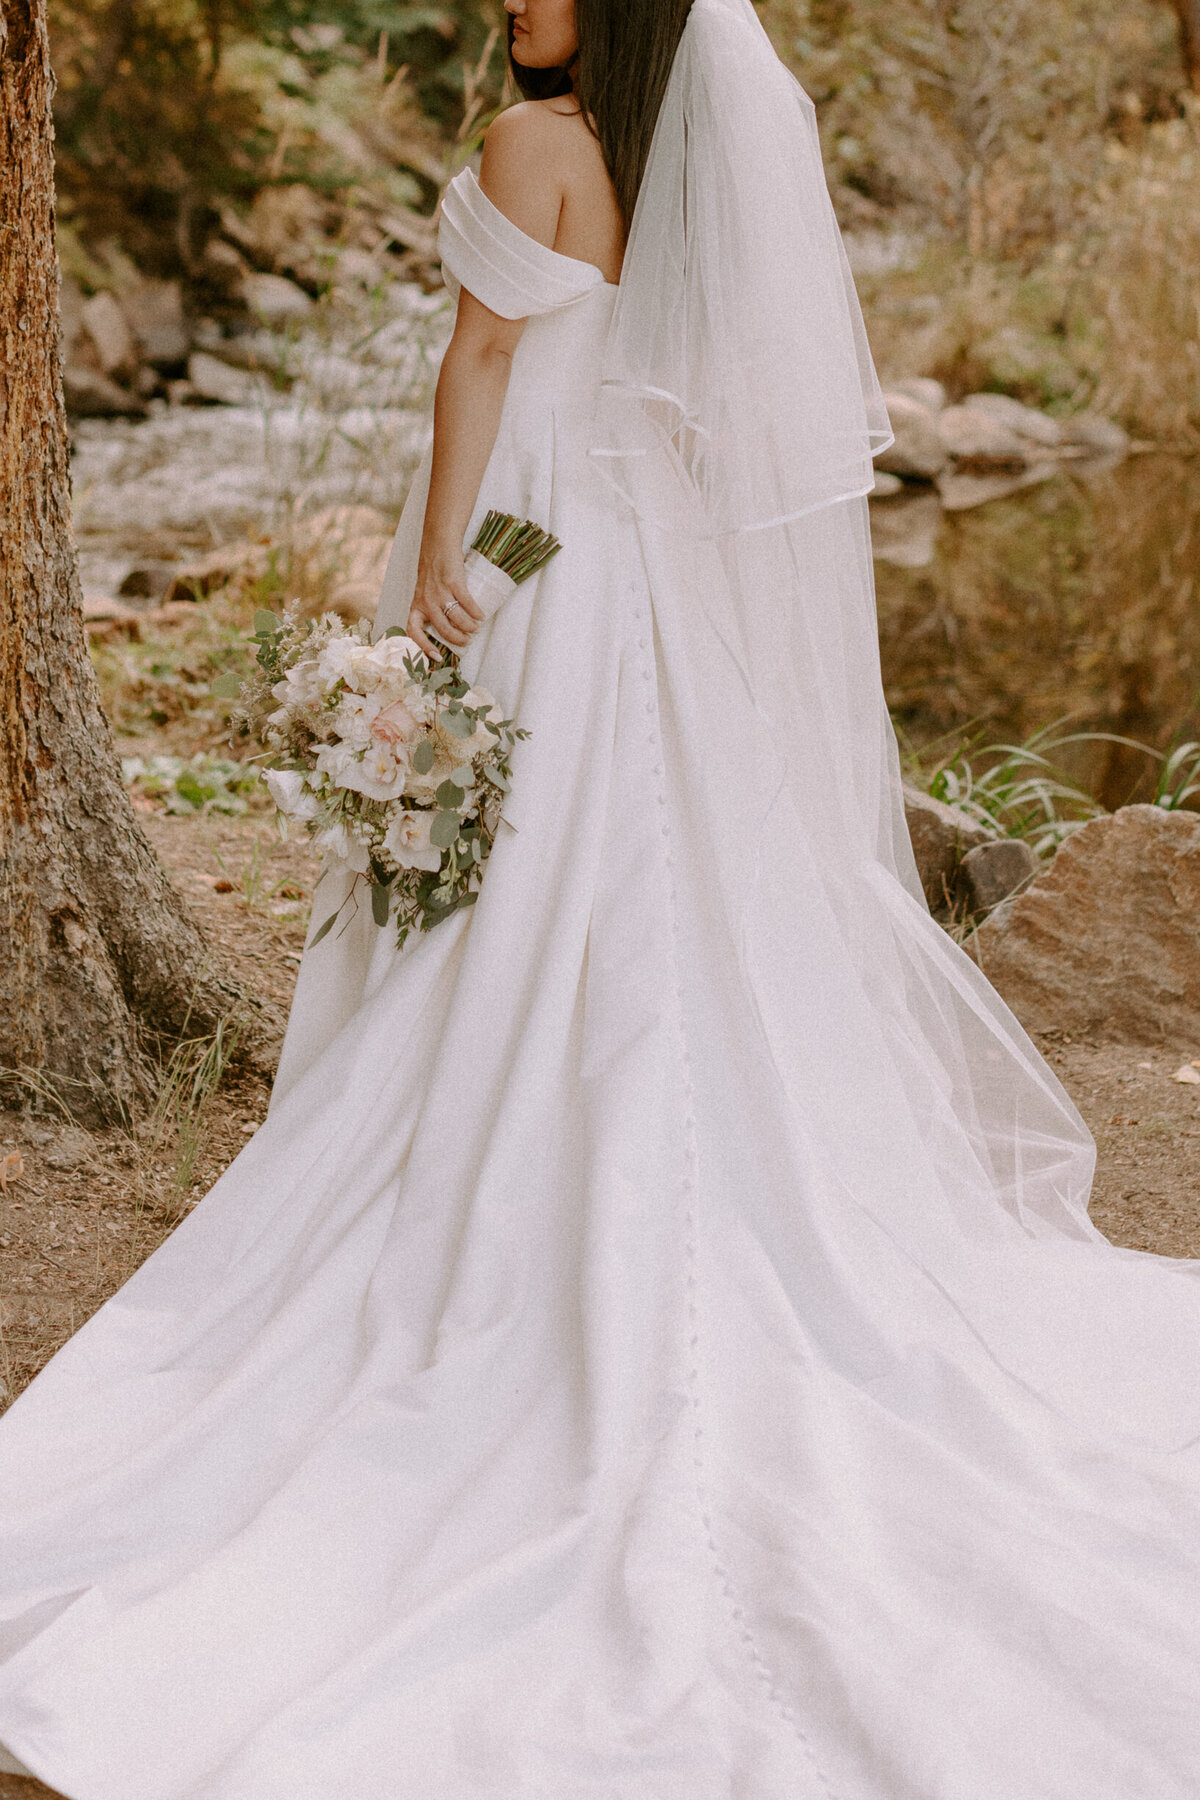 AhnaMariaPhotography_Wedding_Colorado_Daphne&Cy-111